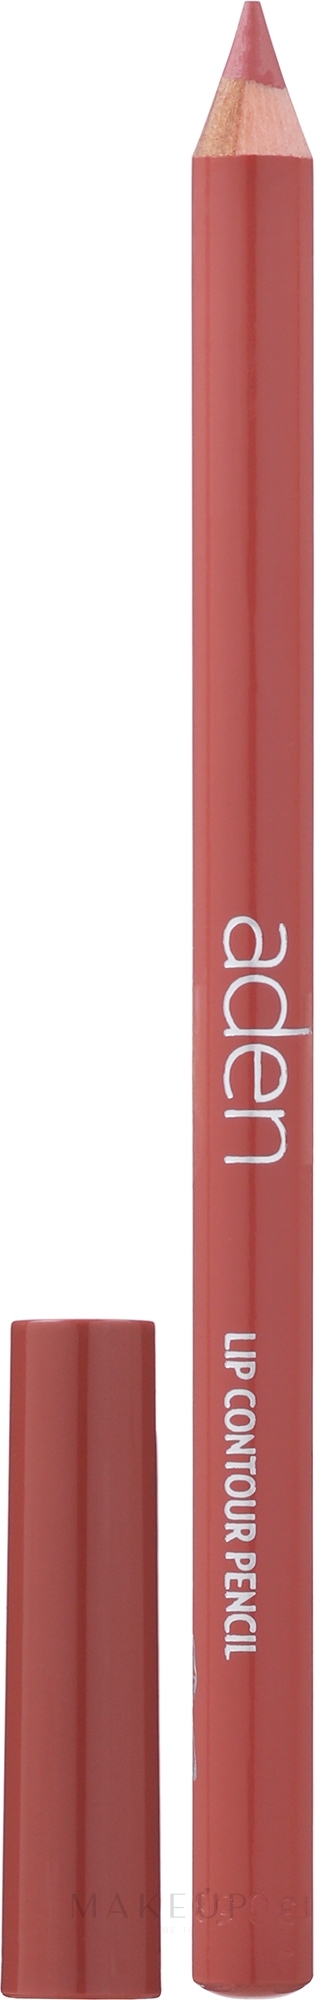 Lippenkonturenstift - Aden Cosmetics Lip Contour Pencil — Bild 01 - Nude